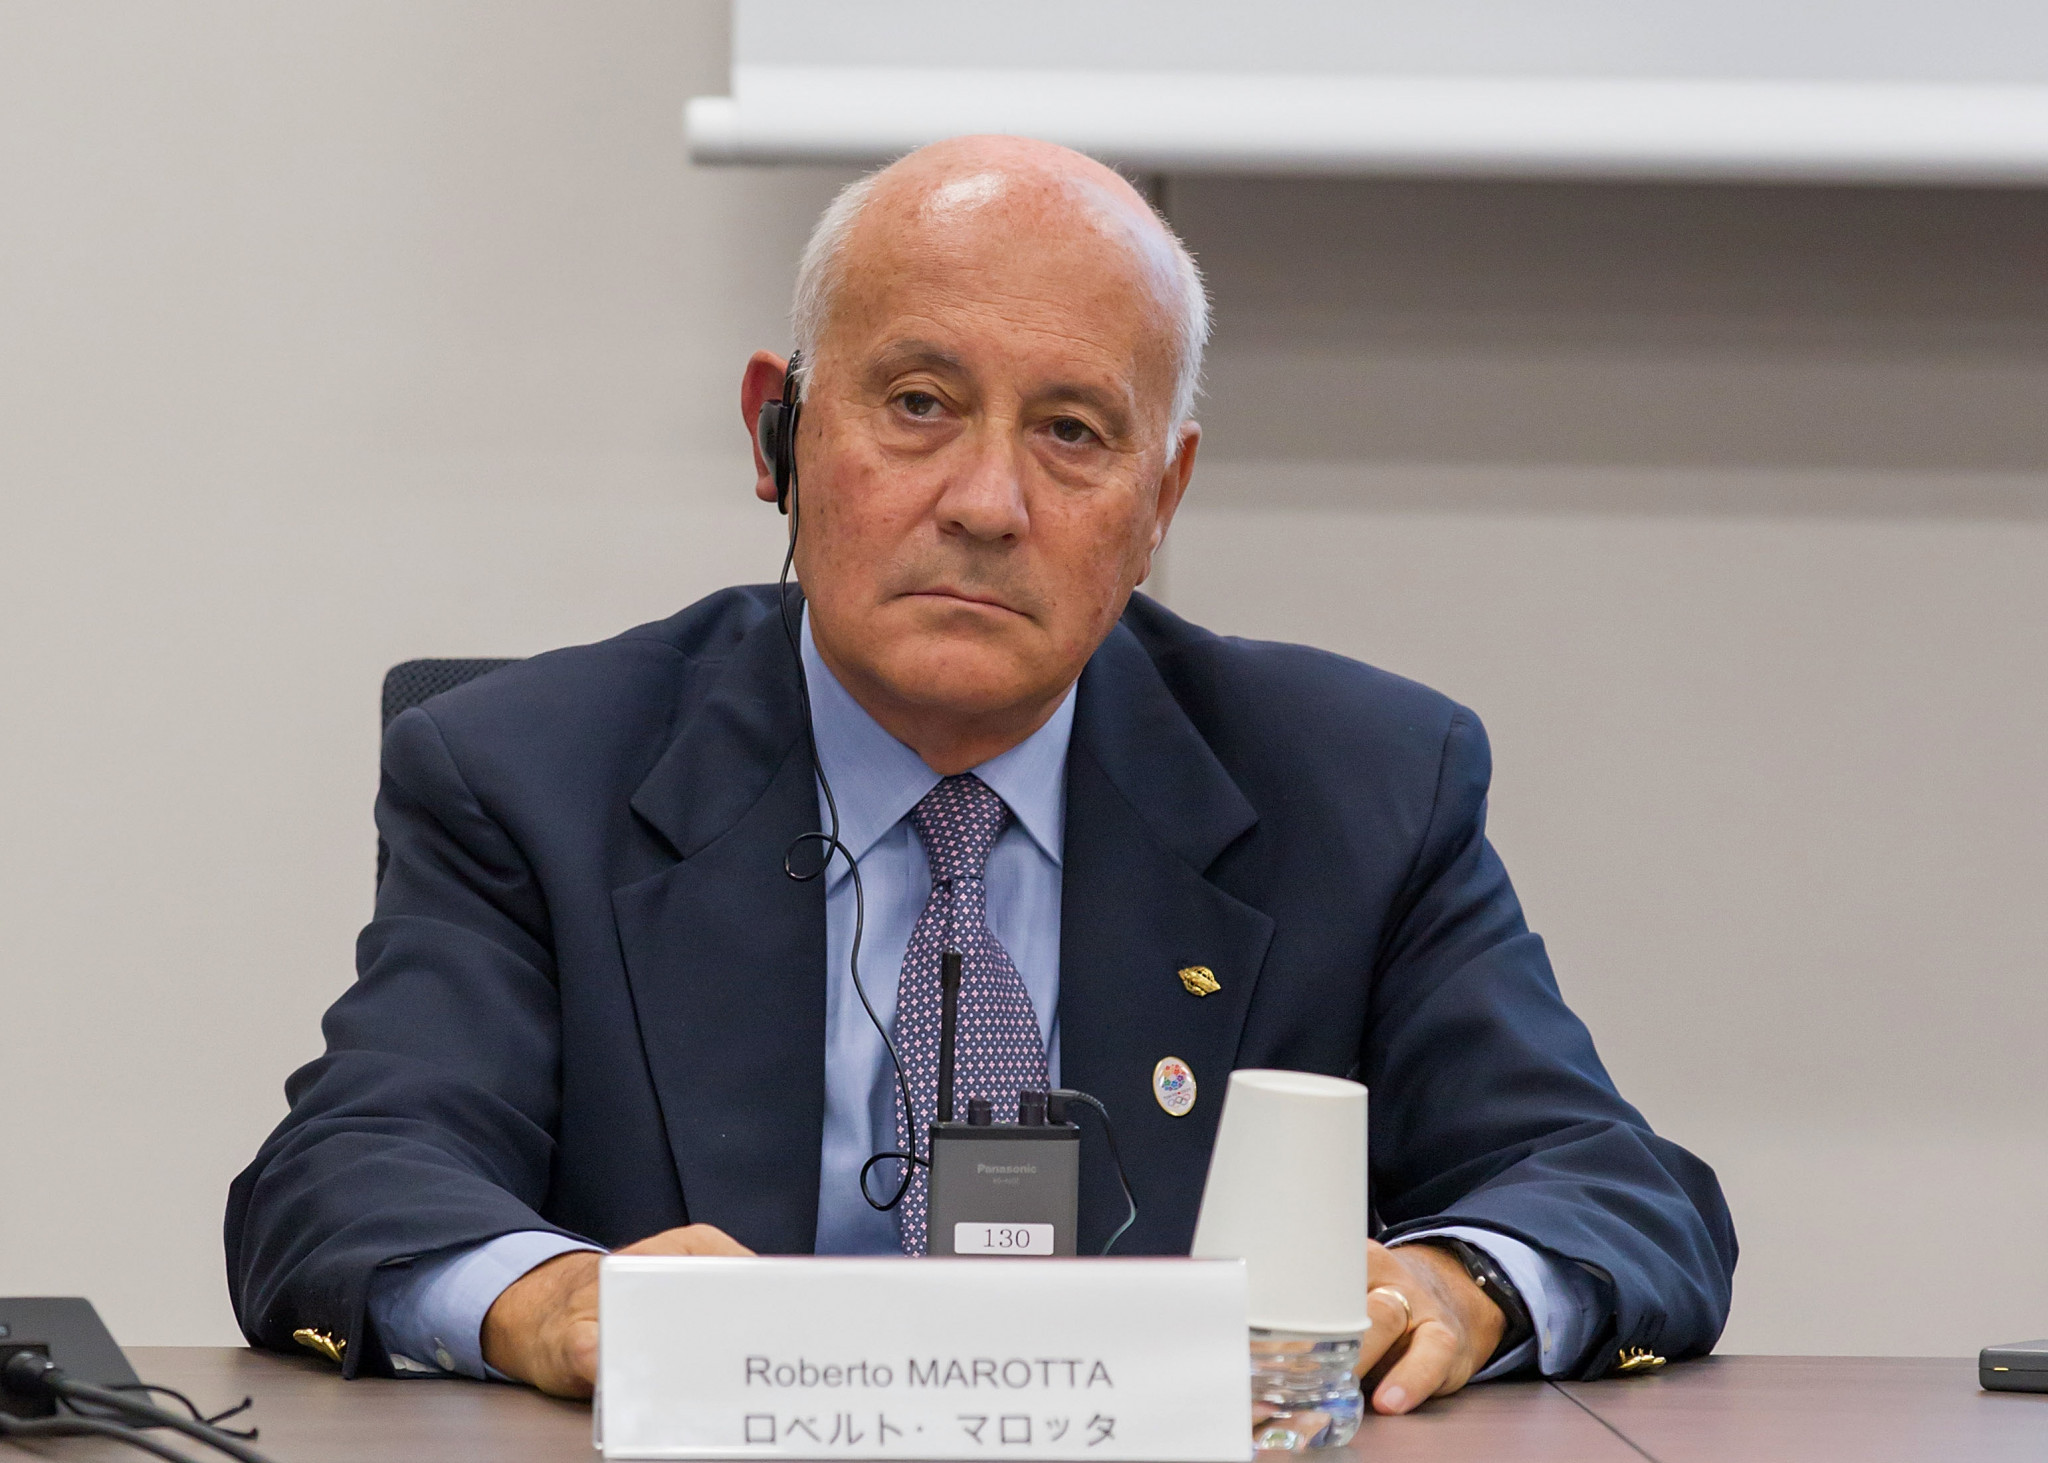 Marotta returned as World Skate secretary general